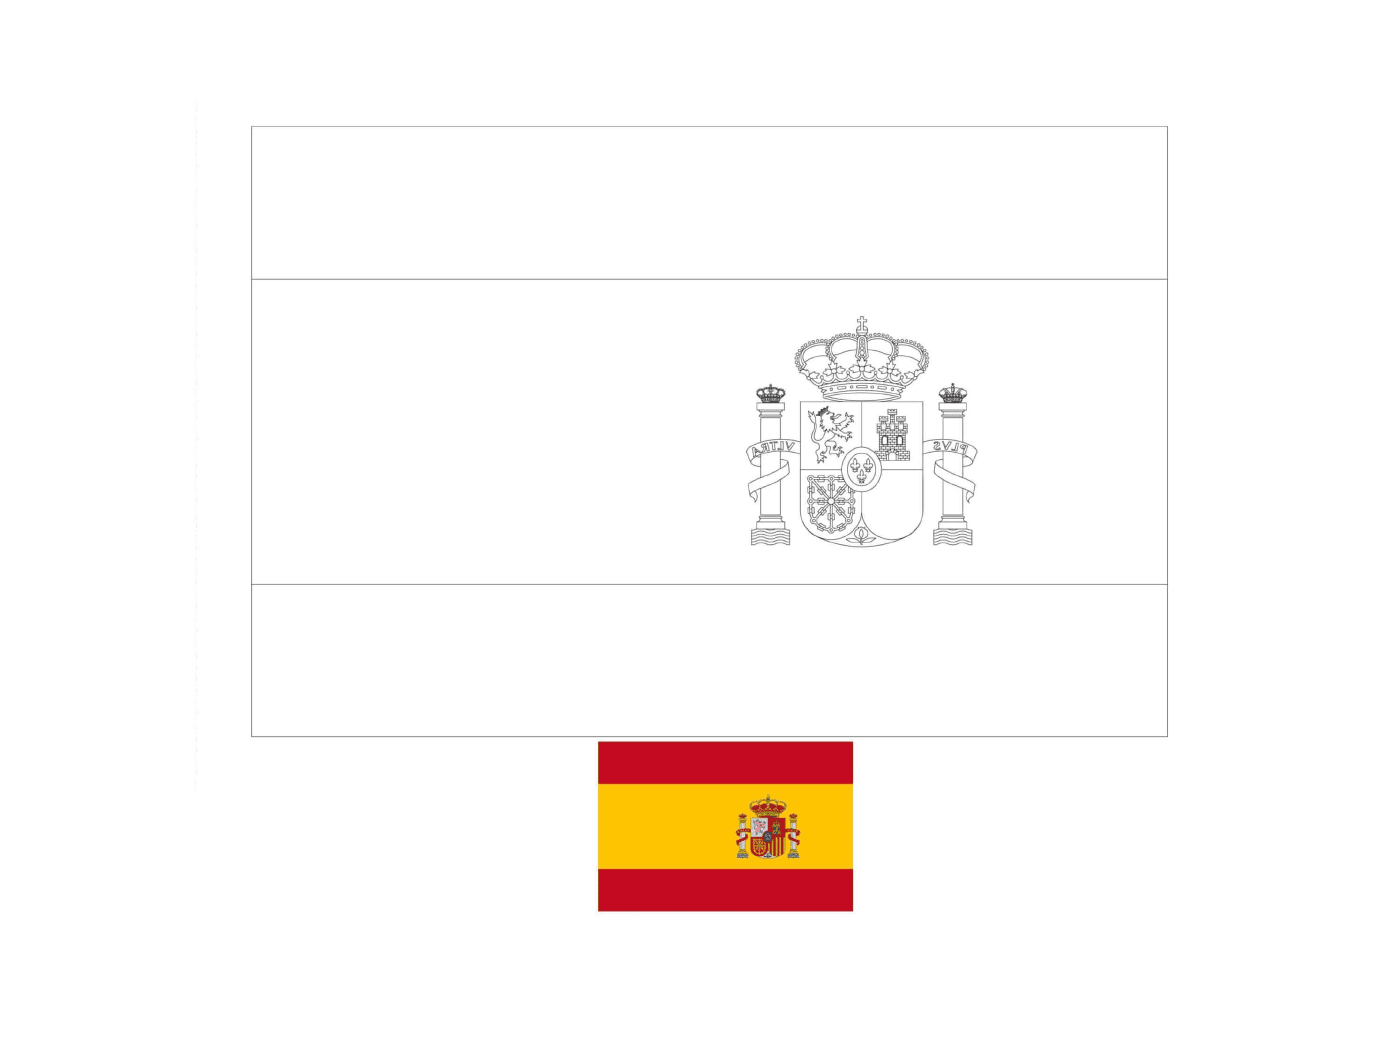  Flagge von Spanien mit Beispielen gezeichnet 